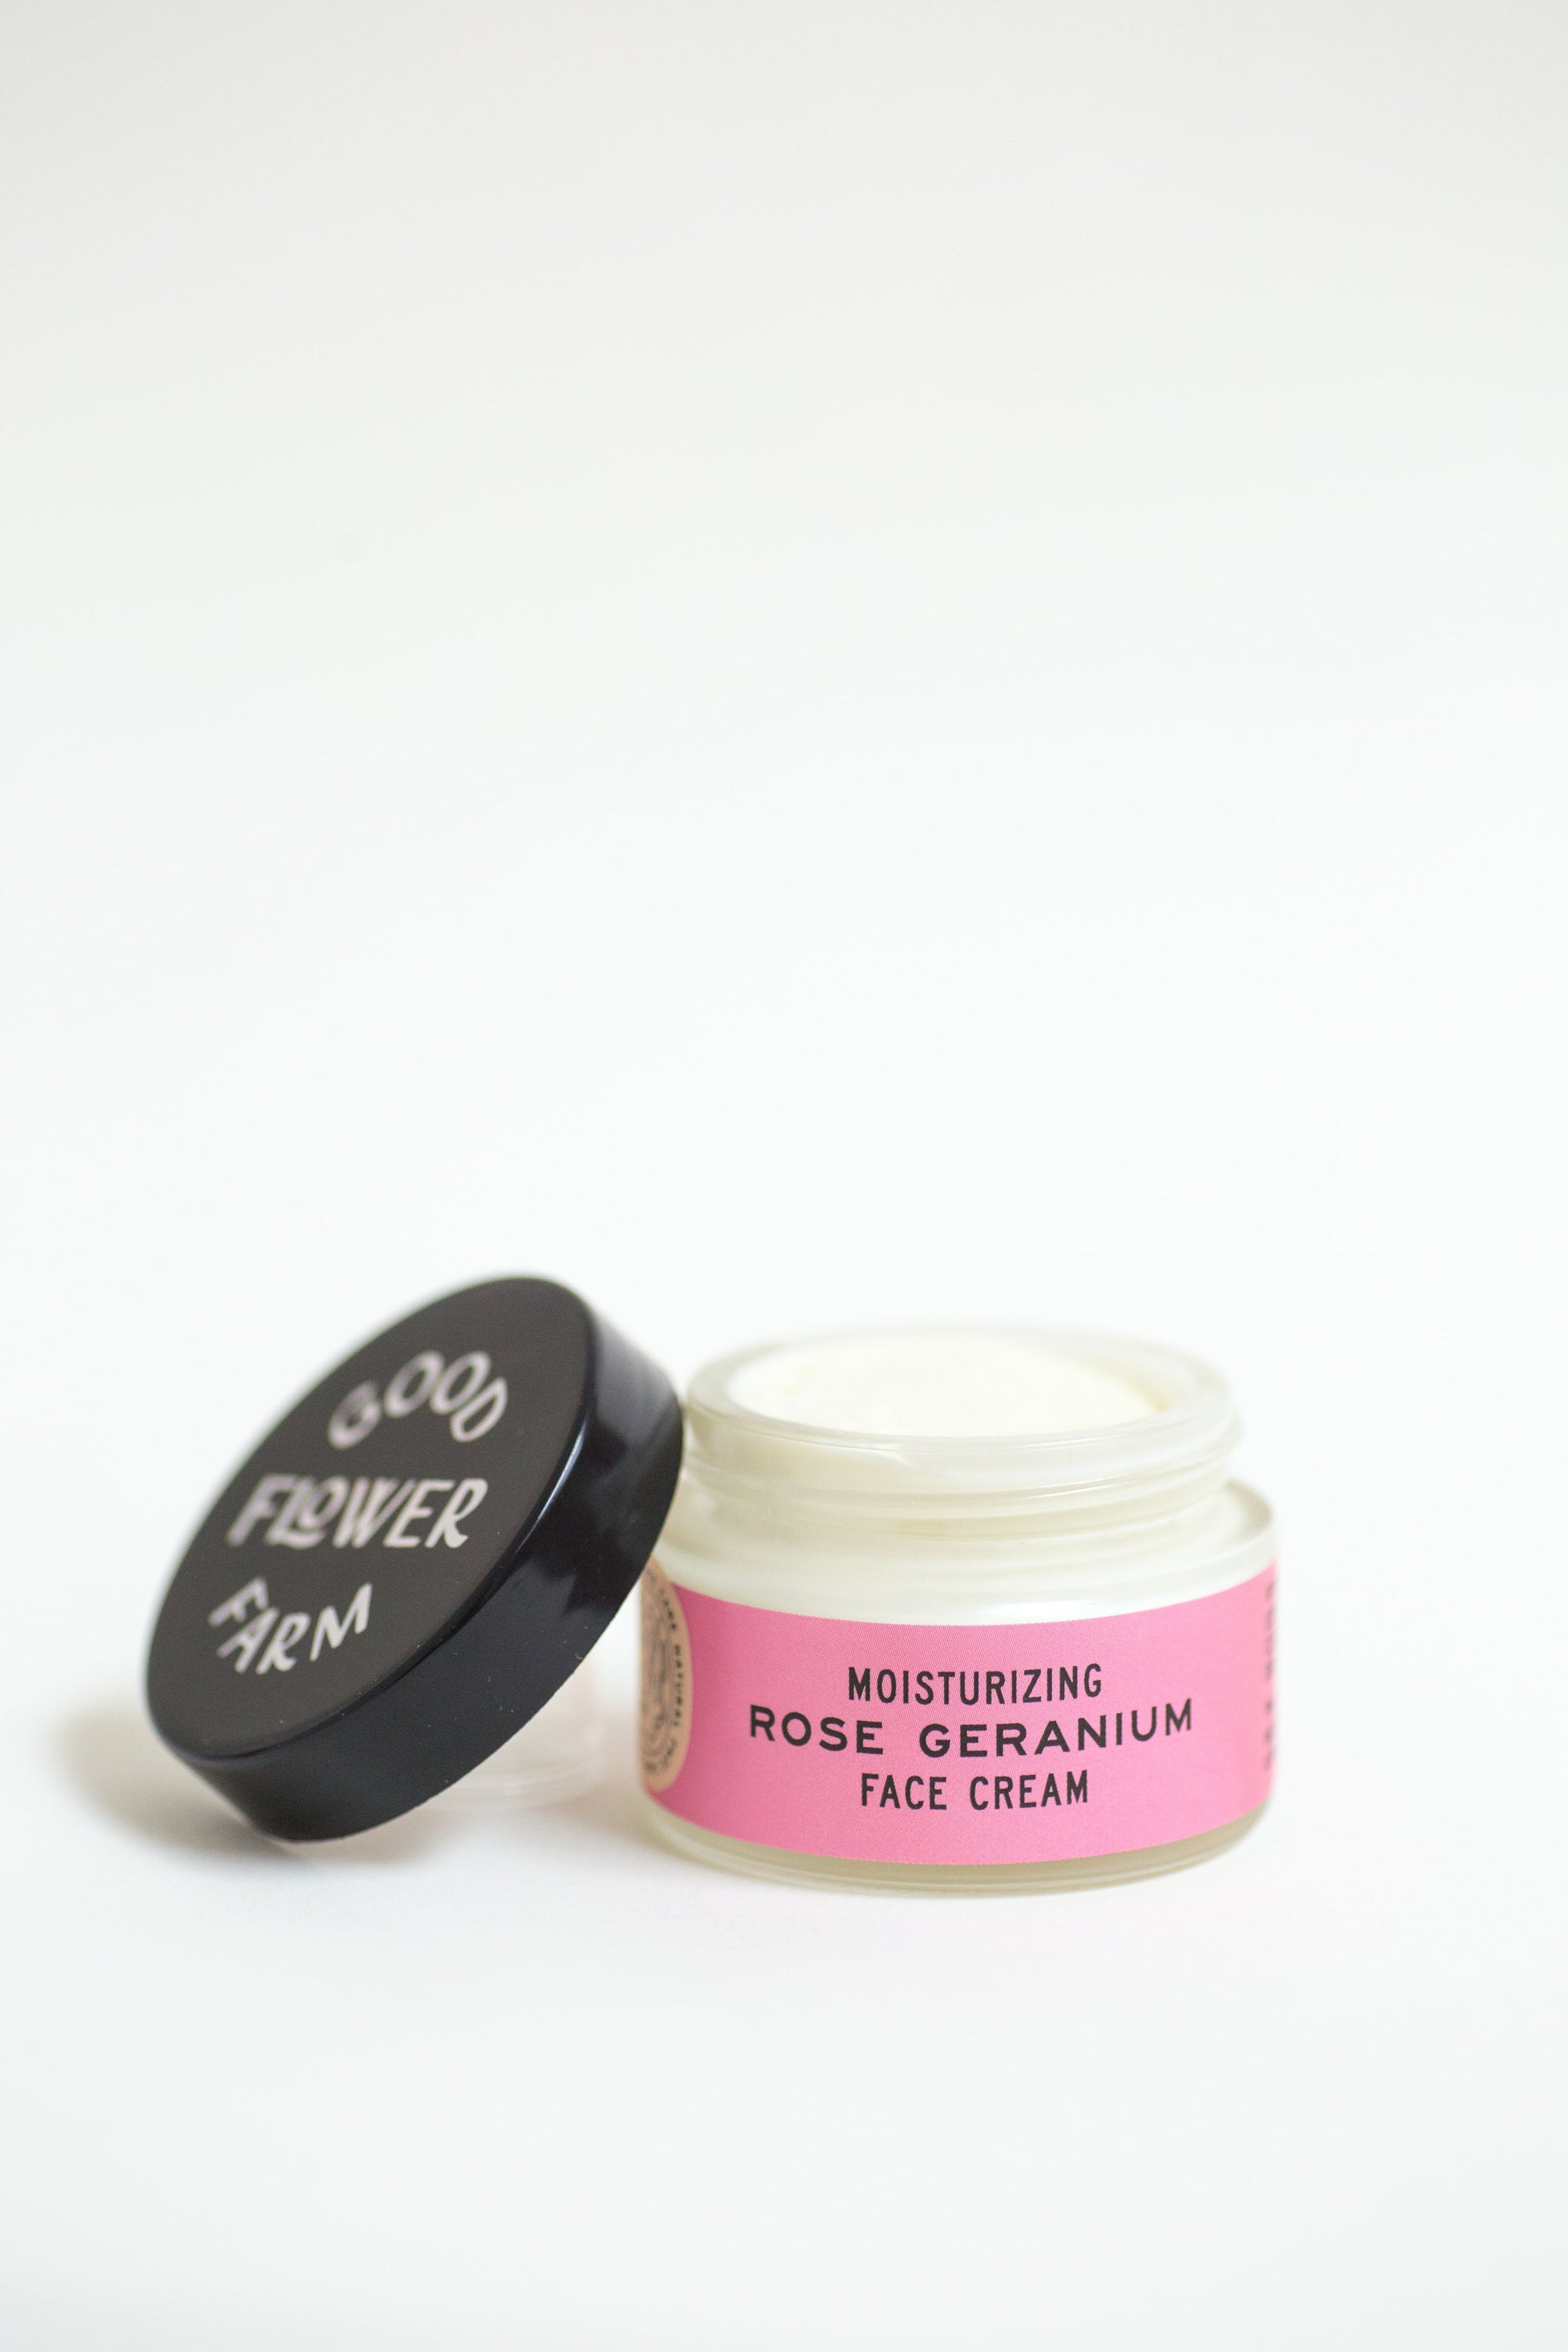 Rose Geranium Face Cream / 1 oz